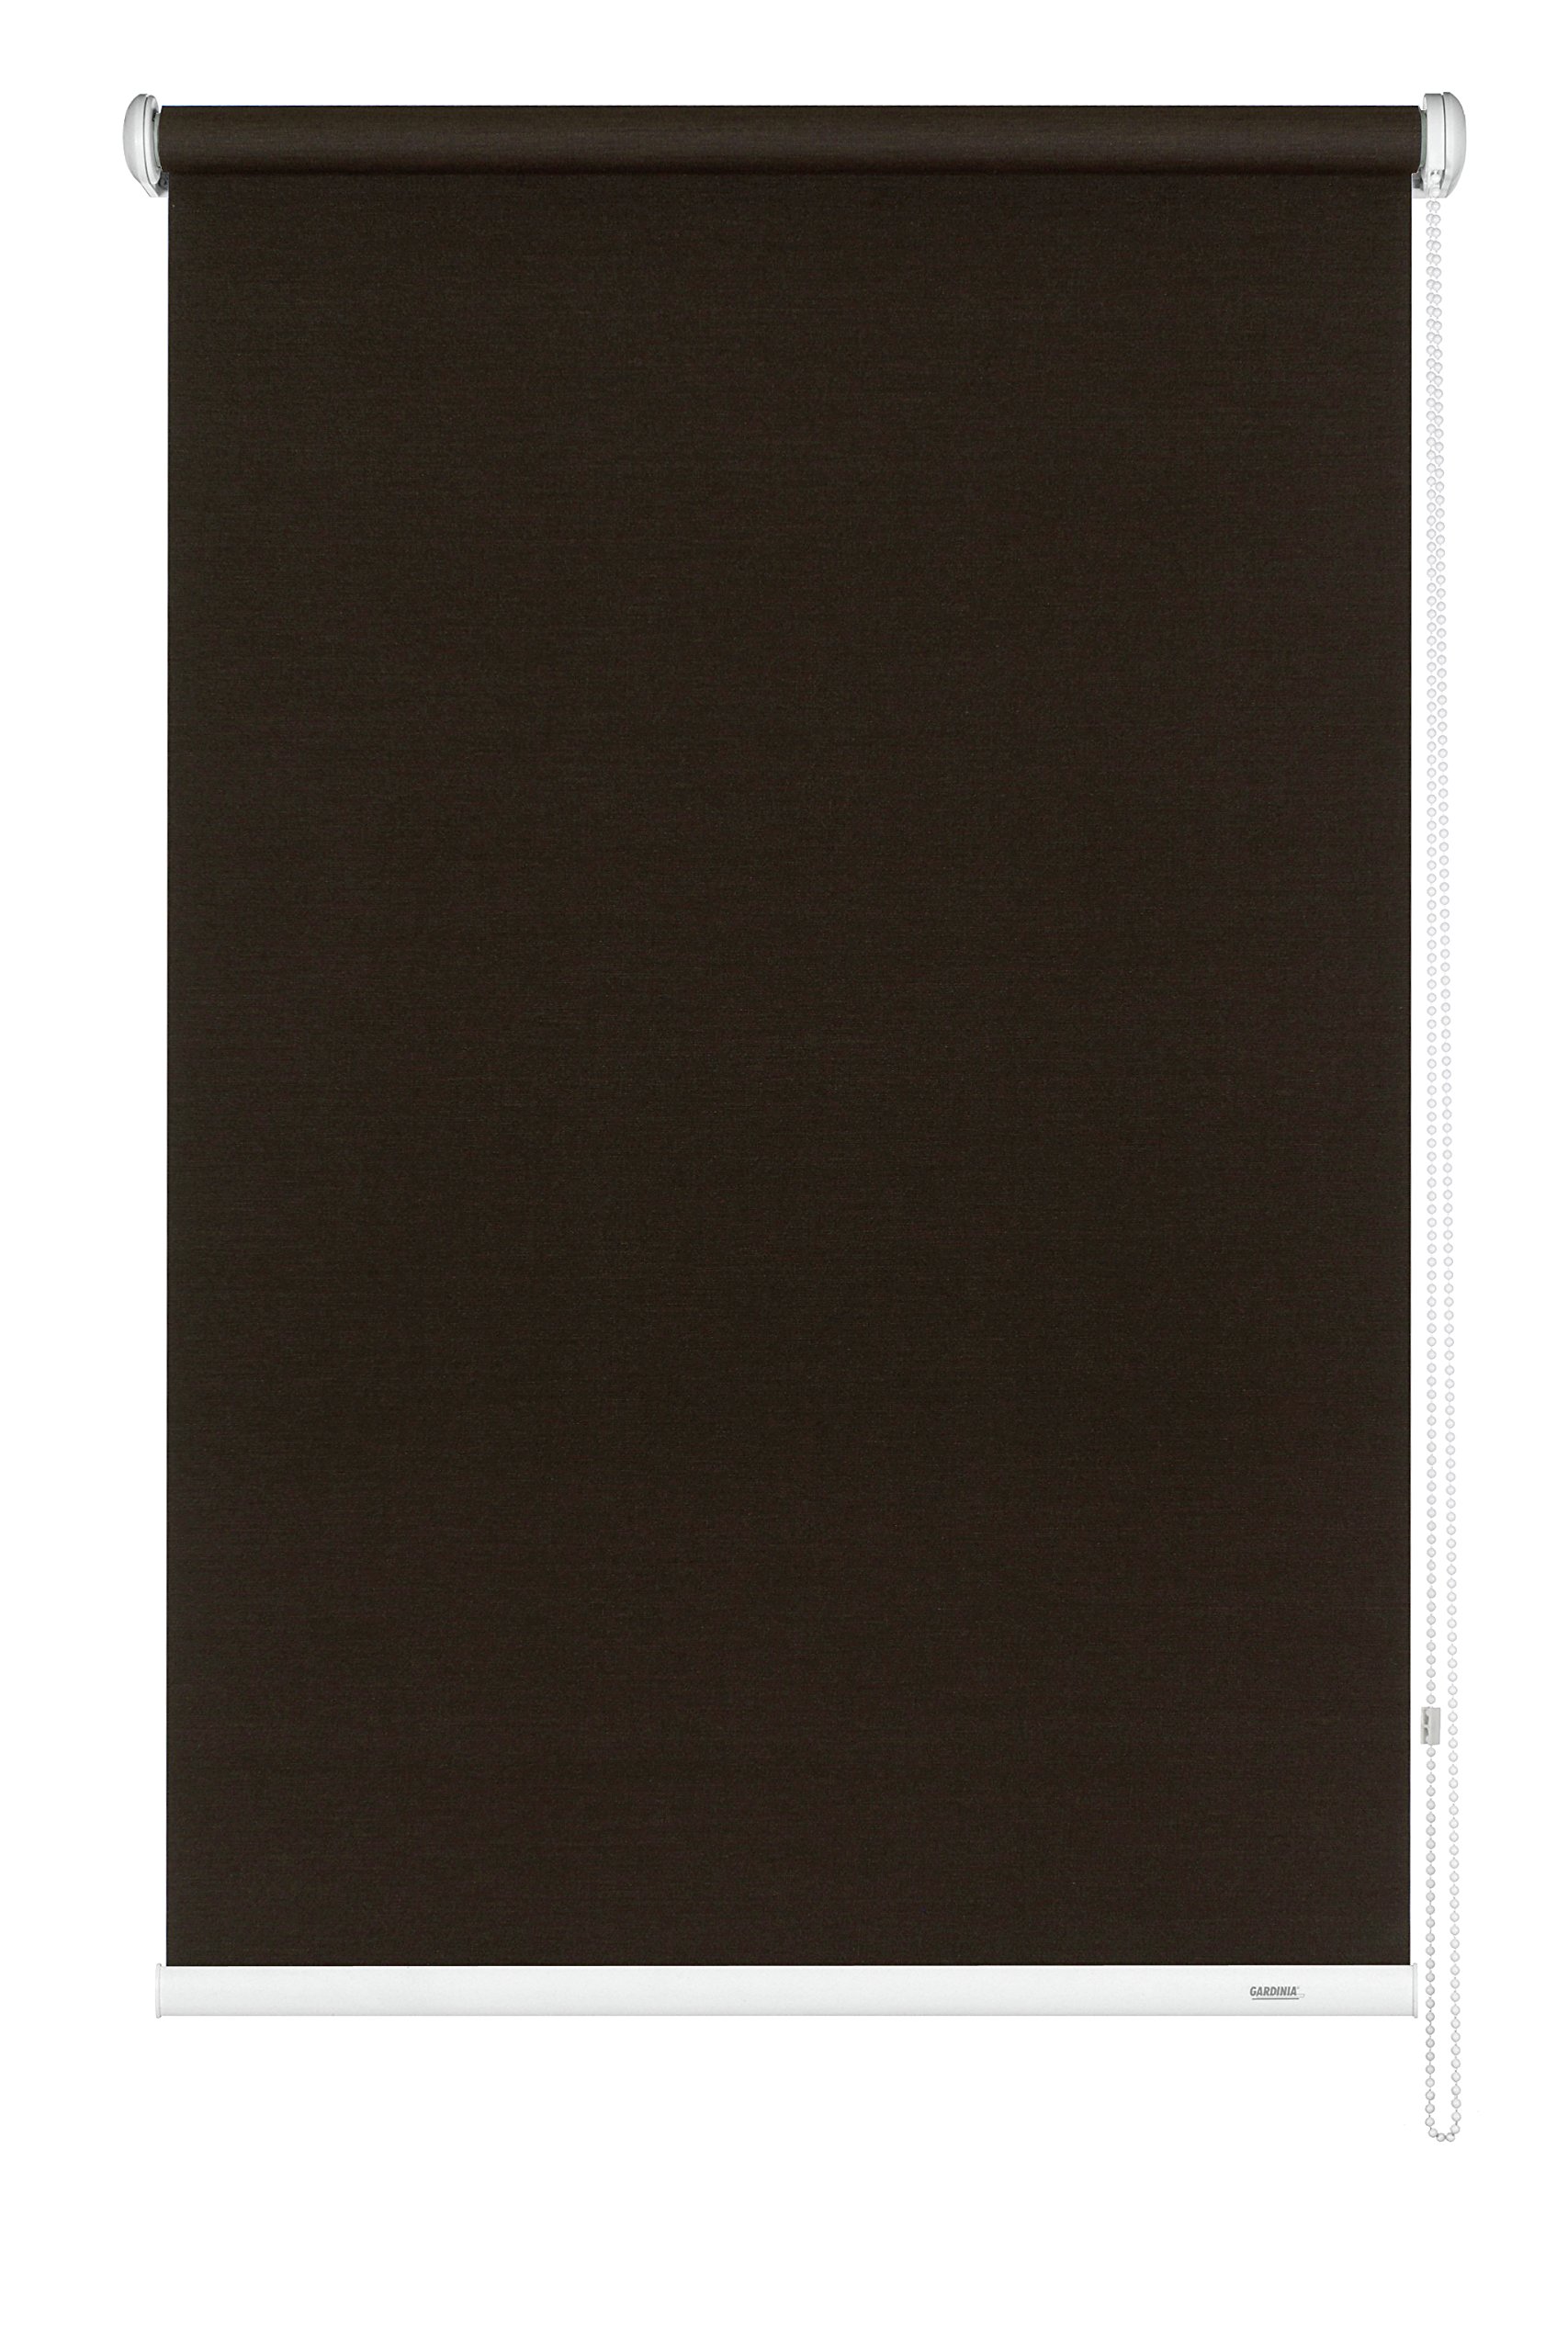 GARDINIA Seitenzug-Rollo, Decken-, Wand- oder Nischenmontage, Lichtdurchlässig, Blickdicht, Alle Montage-Teile inklusive, Dunkelbraun, 52 x 180 cm (BxH)